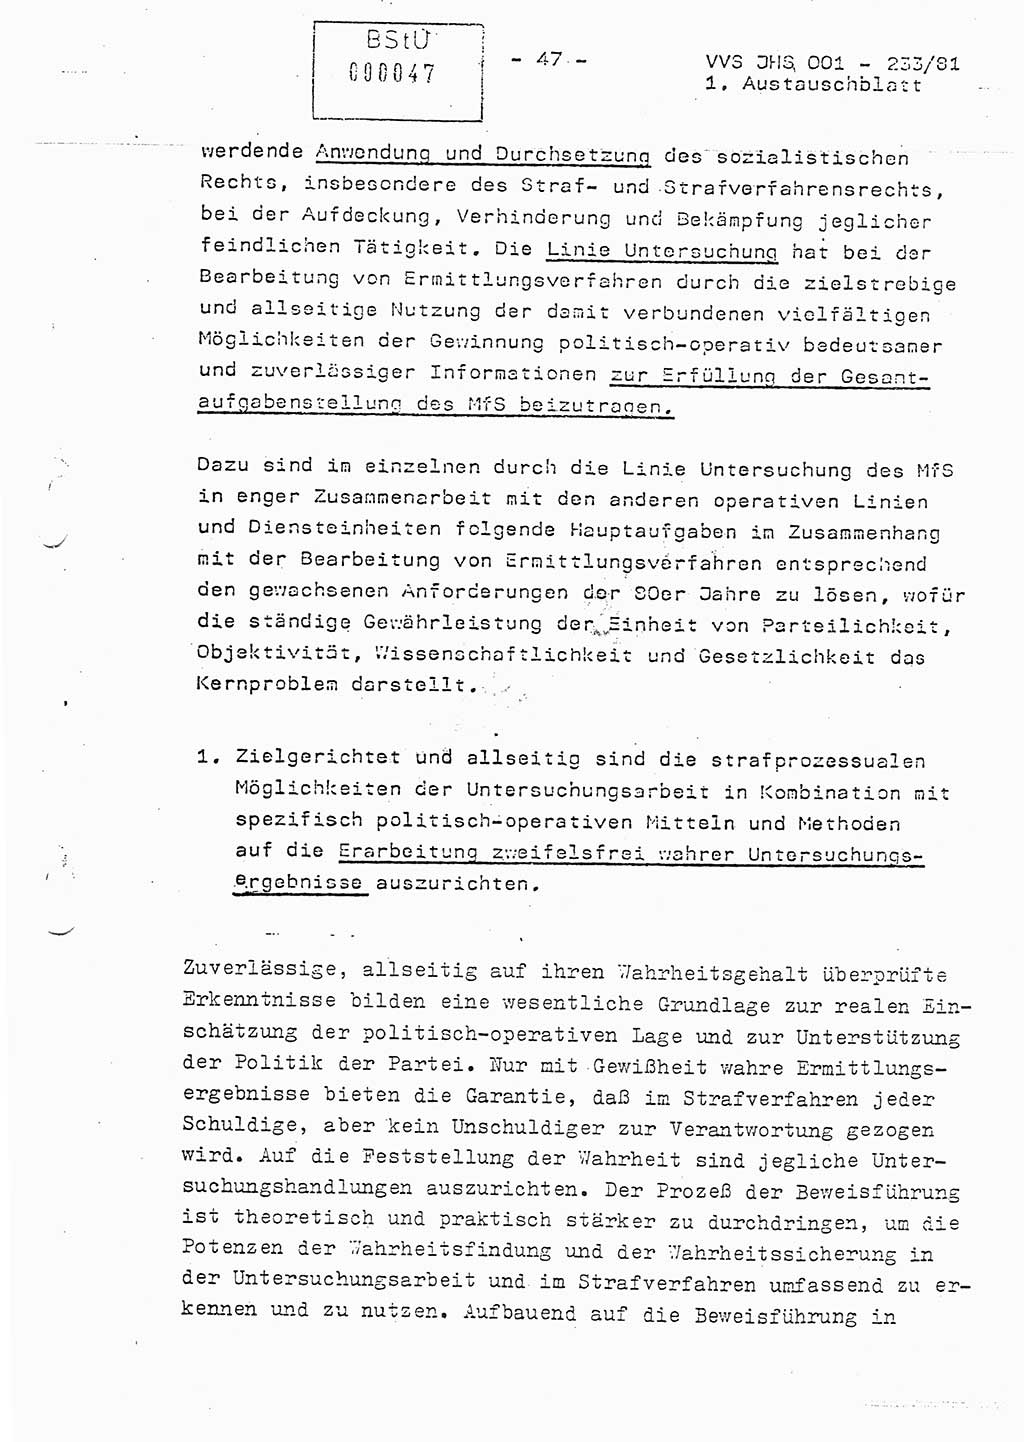 Dissertation Oberstleutnant Horst Zank (JHS), Oberstleutnant Dr. Karl-Heinz Knoblauch (JHS), Oberstleutnant Gustav-Adolf Kowalewski (HA Ⅸ), Oberstleutnant Wolfgang Plötner (HA Ⅸ), Ministerium für Staatssicherheit (MfS) [Deutsche Demokratische Republik (DDR)], Juristische Hochschule (JHS), Vertrauliche Verschlußsache (VVS) o001-233/81, Potsdam 1981, Blatt 47 (Diss. MfS DDR JHS VVS o001-233/81 1981, Bl. 47)